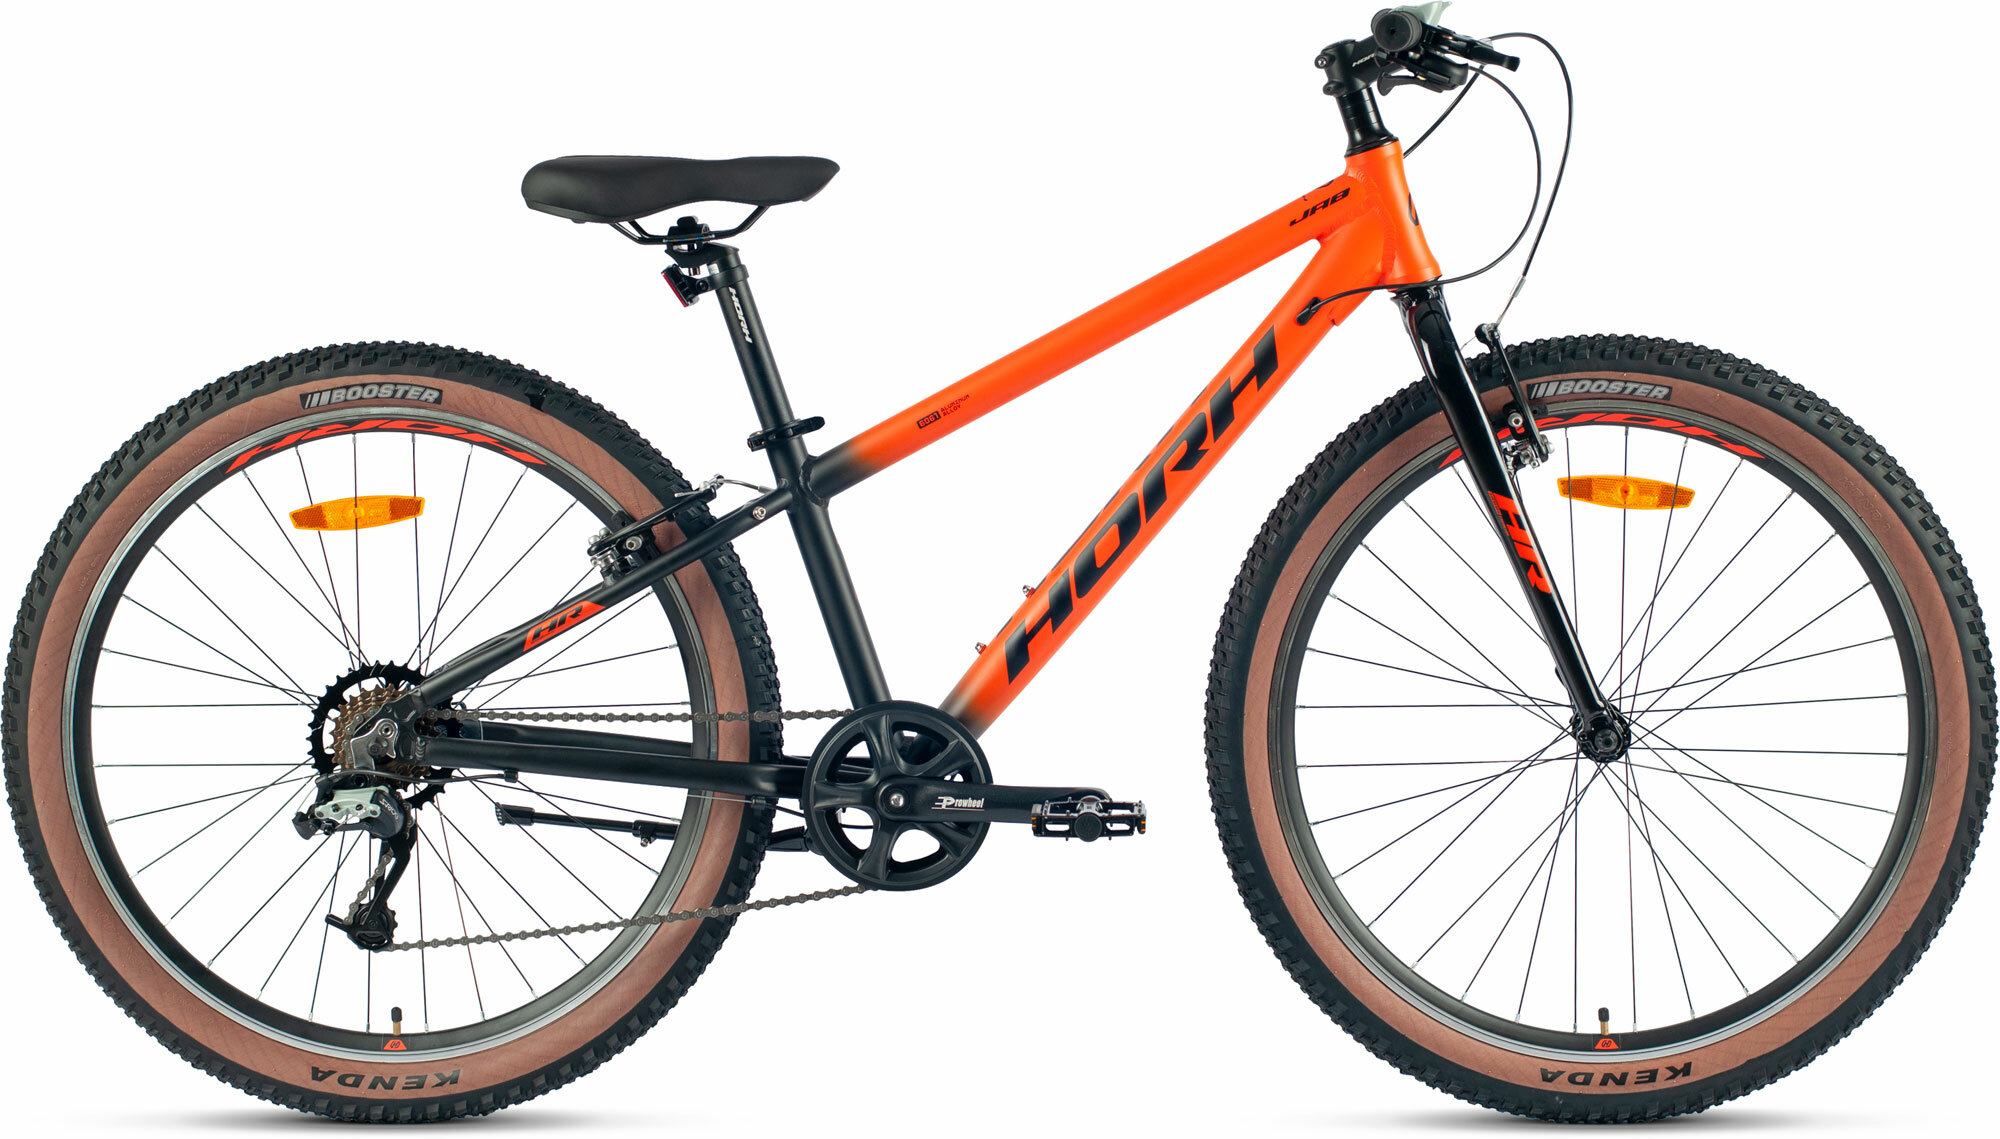 Велосипед горный HORH JAB 26" (2024), ригид, детский, мужской, для мальчиков, алюминиевая рама, 7 скоростей, ободные тормоза, цвет Orange-Black, оранжевый/черный цвет, размер рамы 13,5", для роста 150-160 см